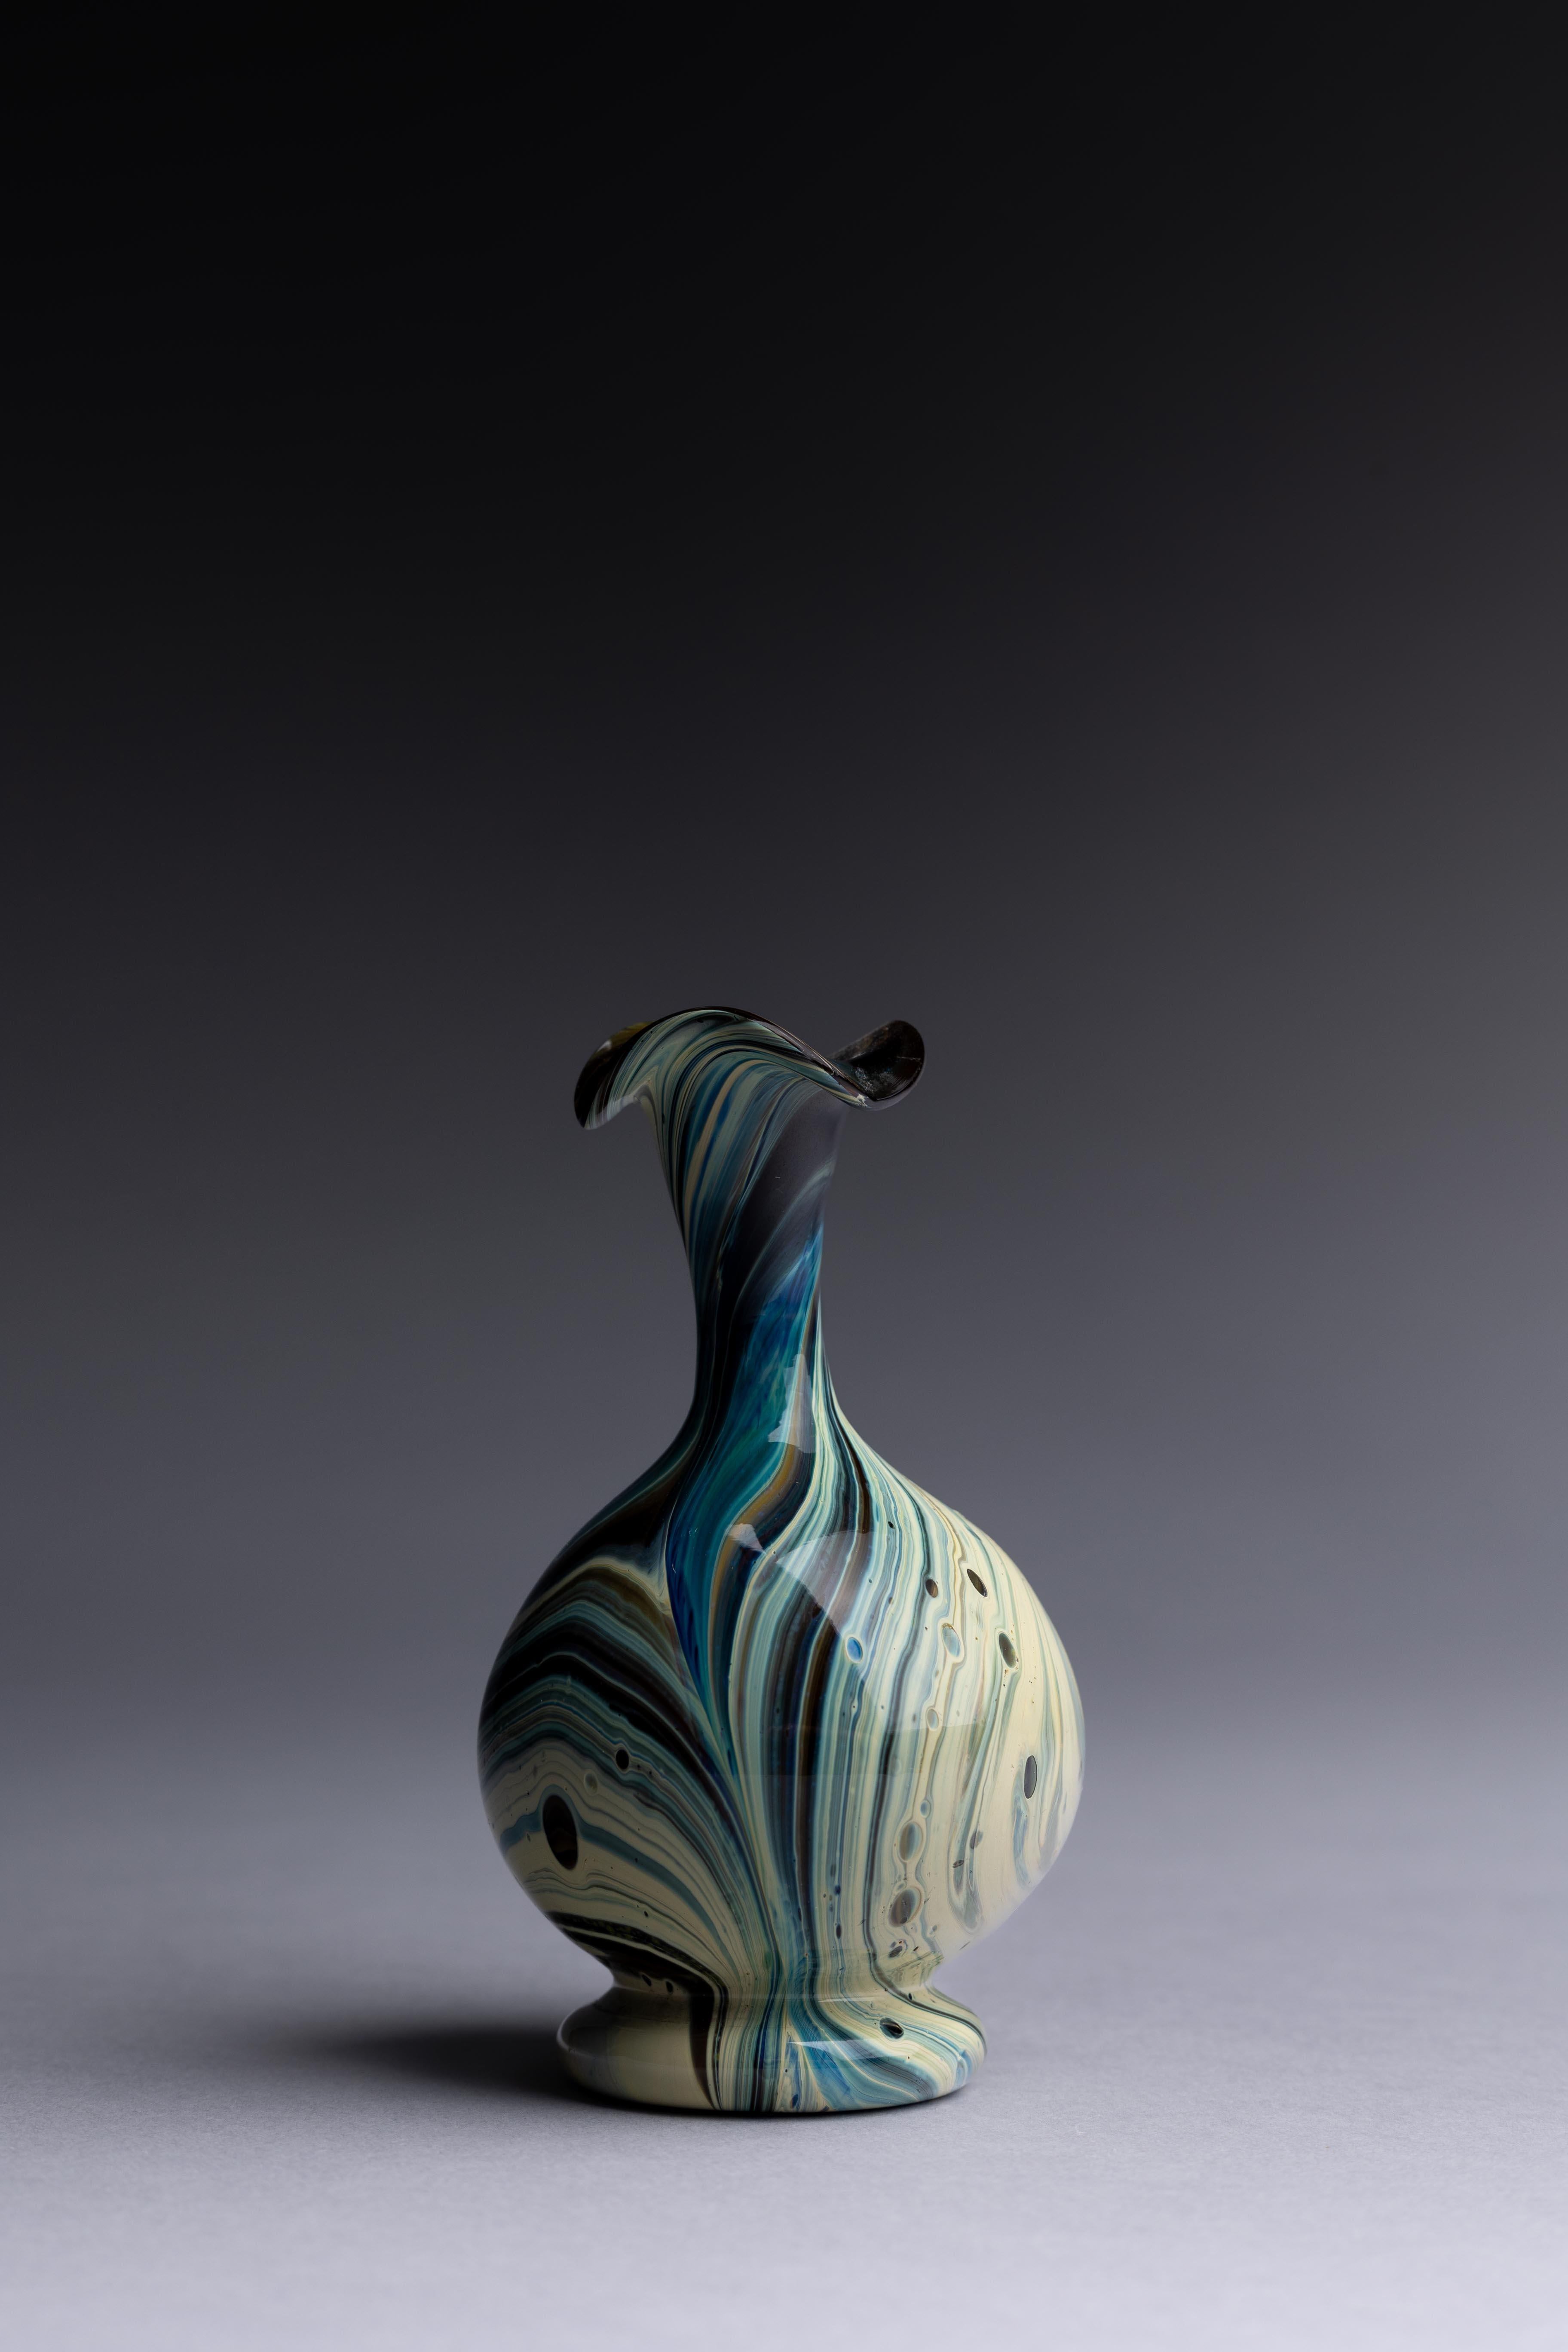 Eine Vase aus Murano-Glas, hergestellt von den Glasmeistern Salviati & Co im späten 19. Jahrhundert, mit einem wunderschön marmorierten Calcedonio-Design.

Diese Murano-Glasvase von Salviati & Co. aus der Zeit um 1880 zeigt eine außergewöhnliche